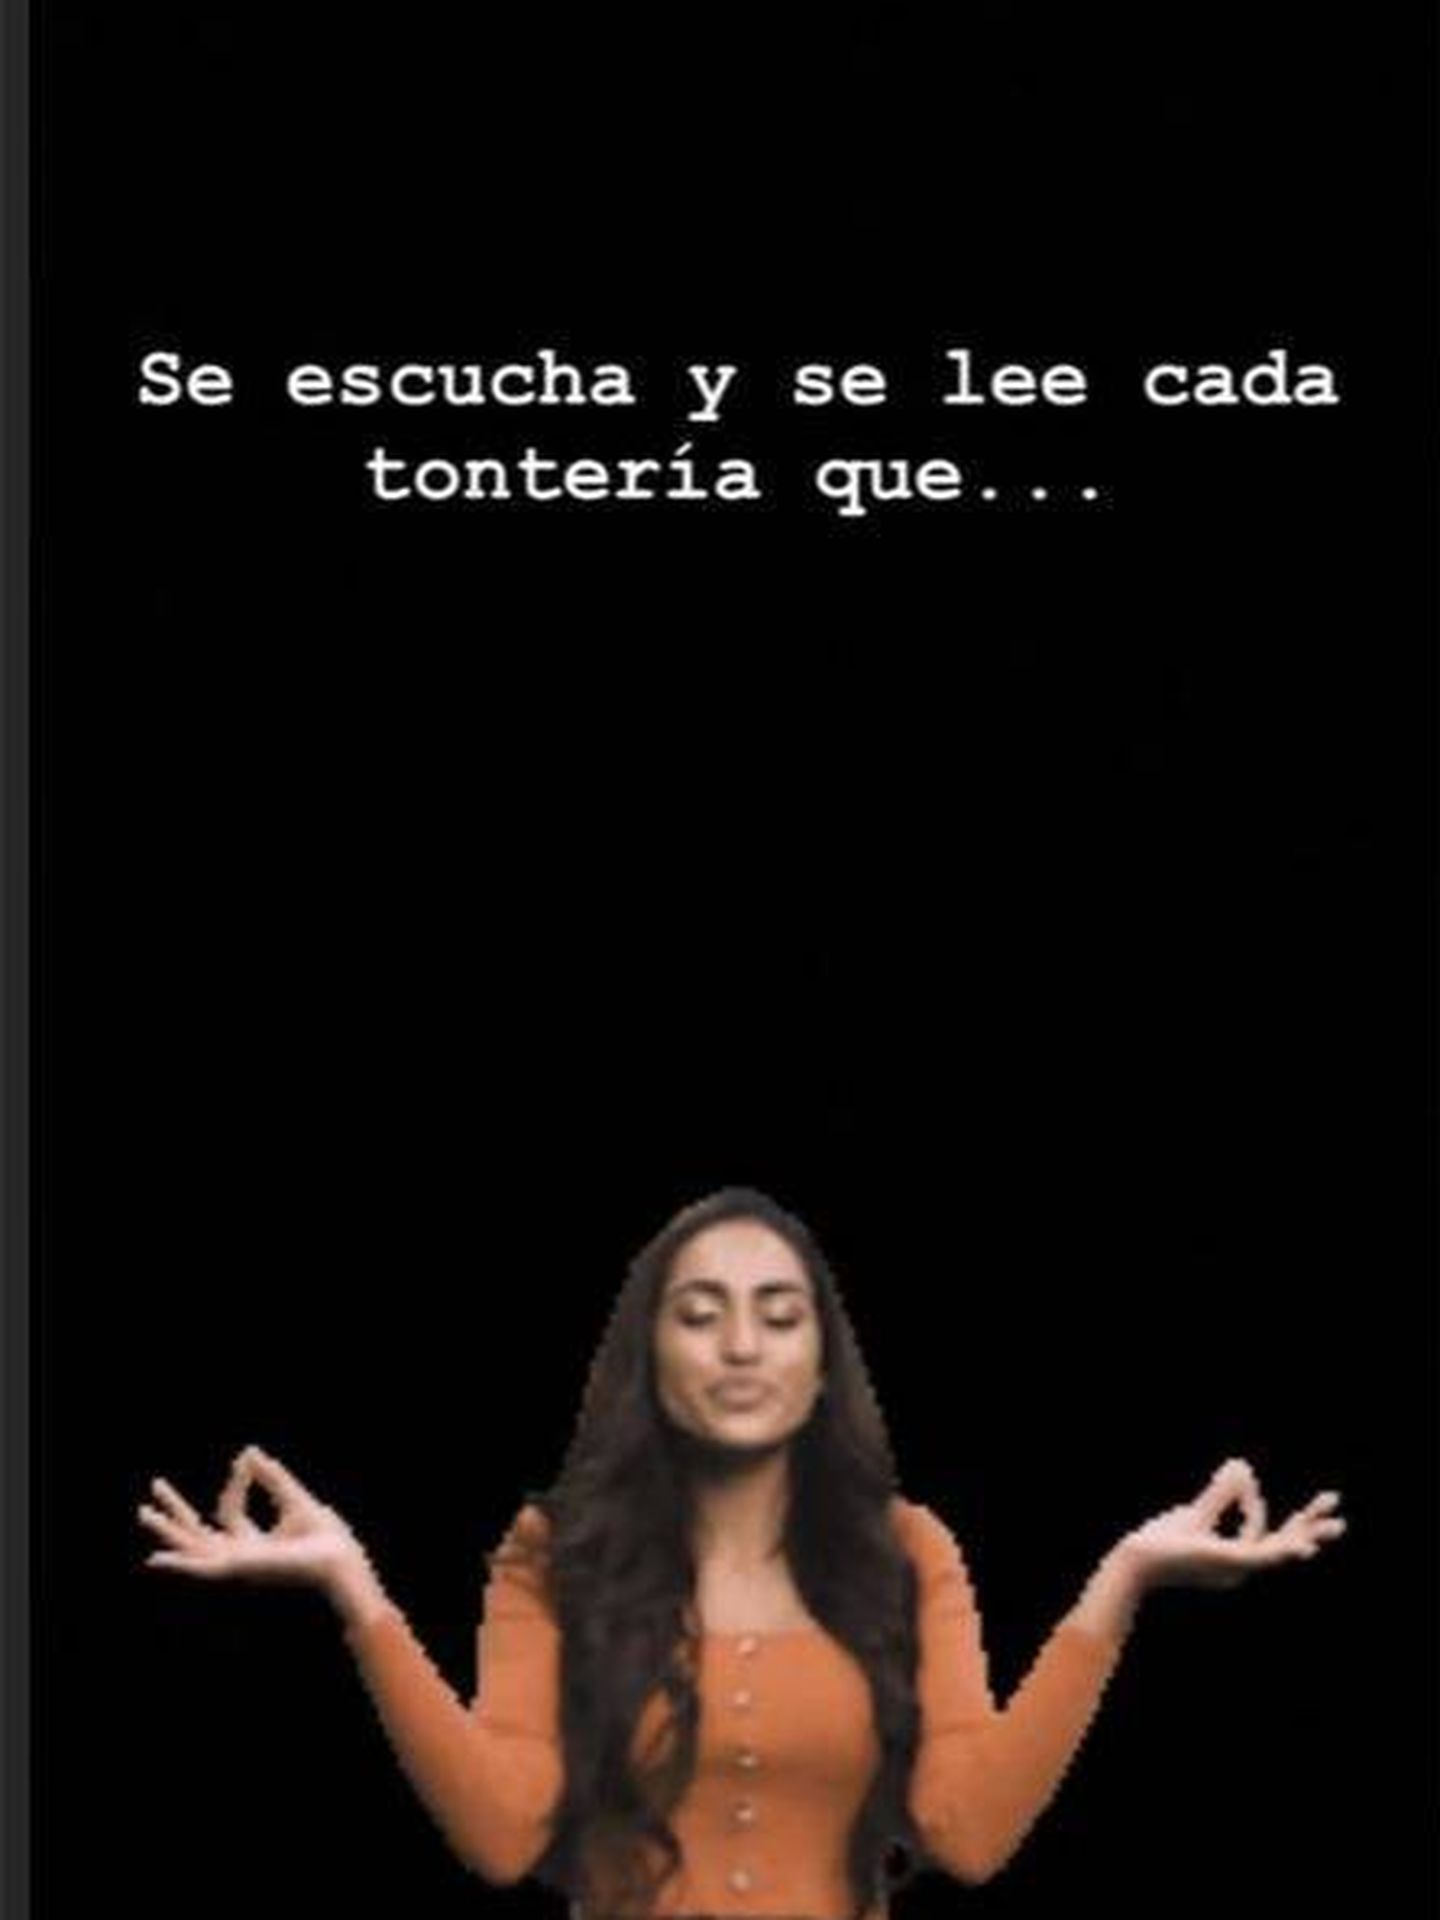 Historia de Lara Álvarez en Instagram